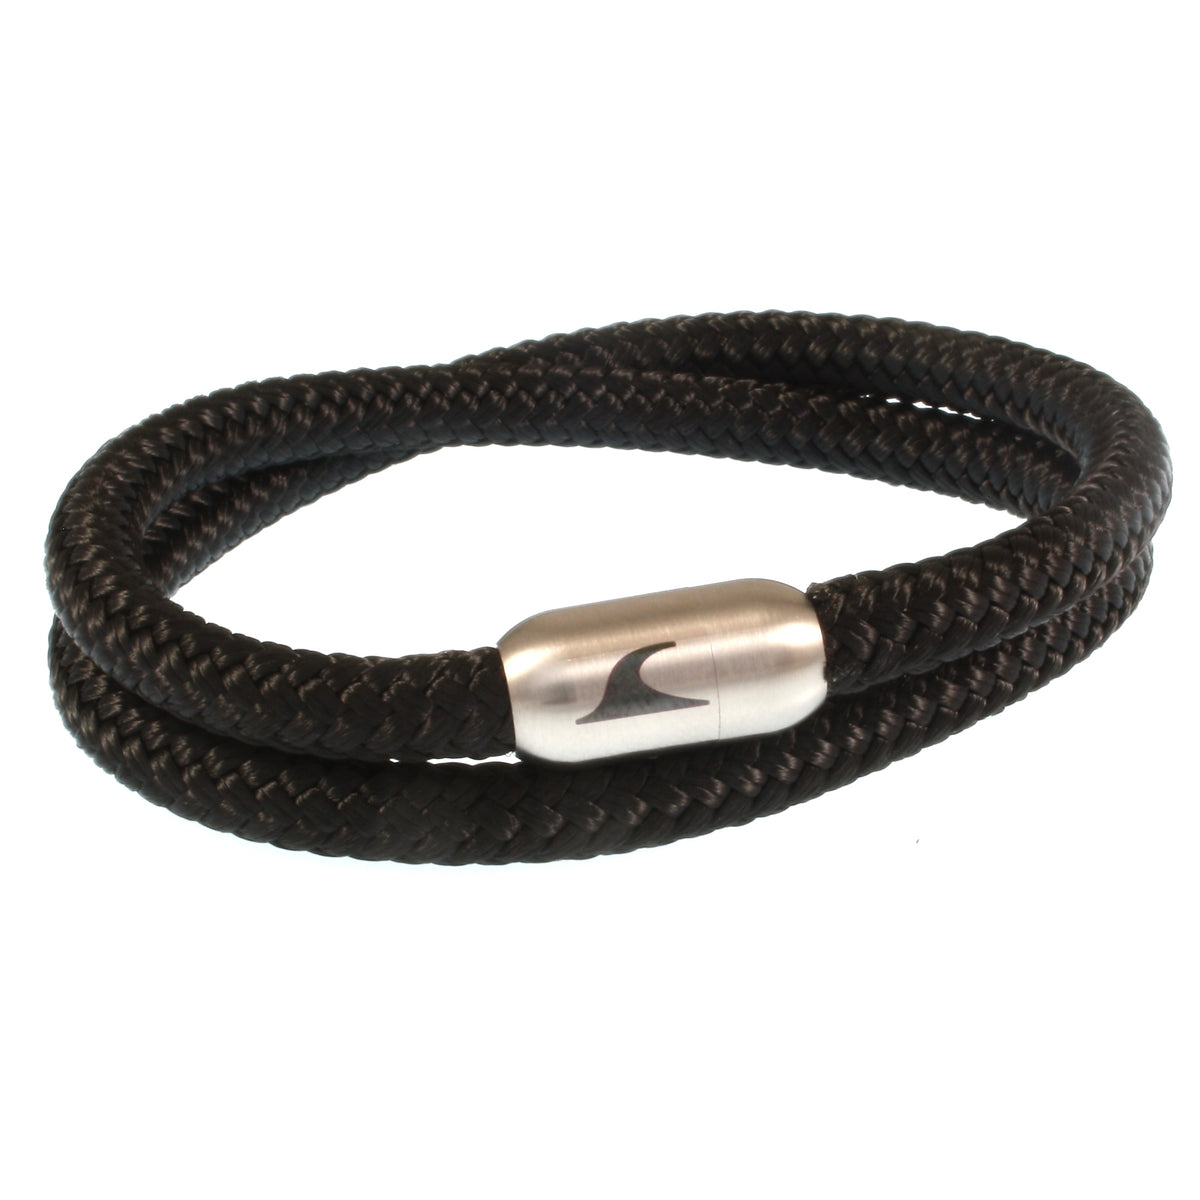 Herren-Segeltau-Armband-hawaii-schwarz-silber-Edelstahlverschluss-vorn-wavepirate-shop-st